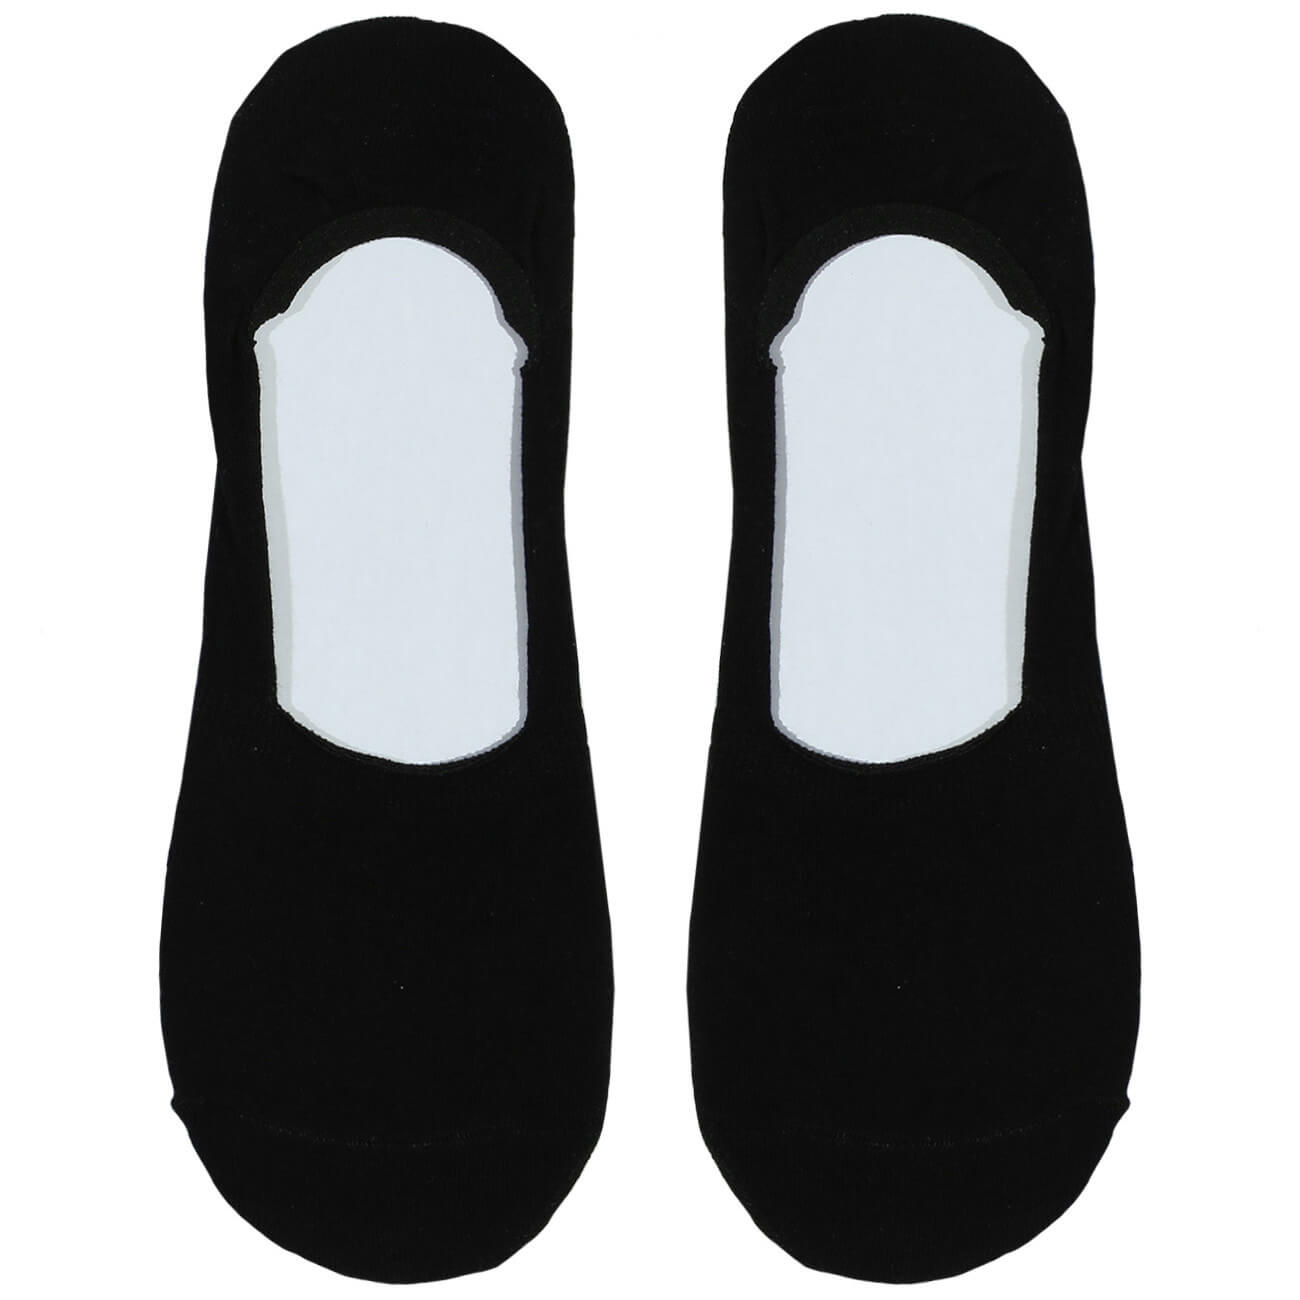 Носки-следки мужские, р. 39-42, хлопок/полиэстер, черные, Basic носки следки женские р 36 38 хлопок полиэстер черные basic